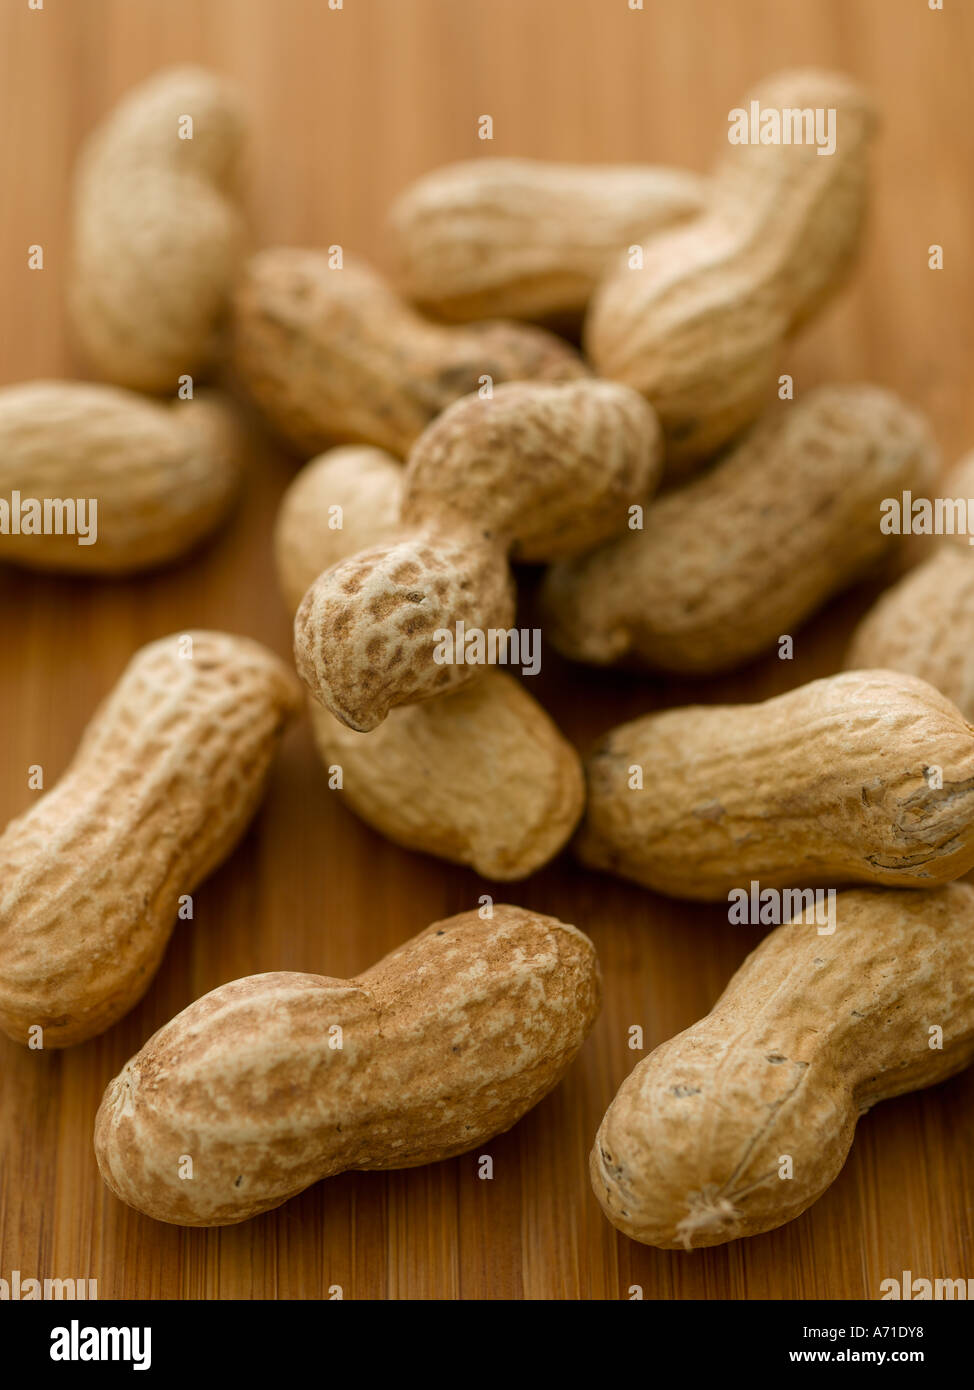 Les arachides en coque - haut de gamme image numérique Hasselblad 61Mo Banque D'Images